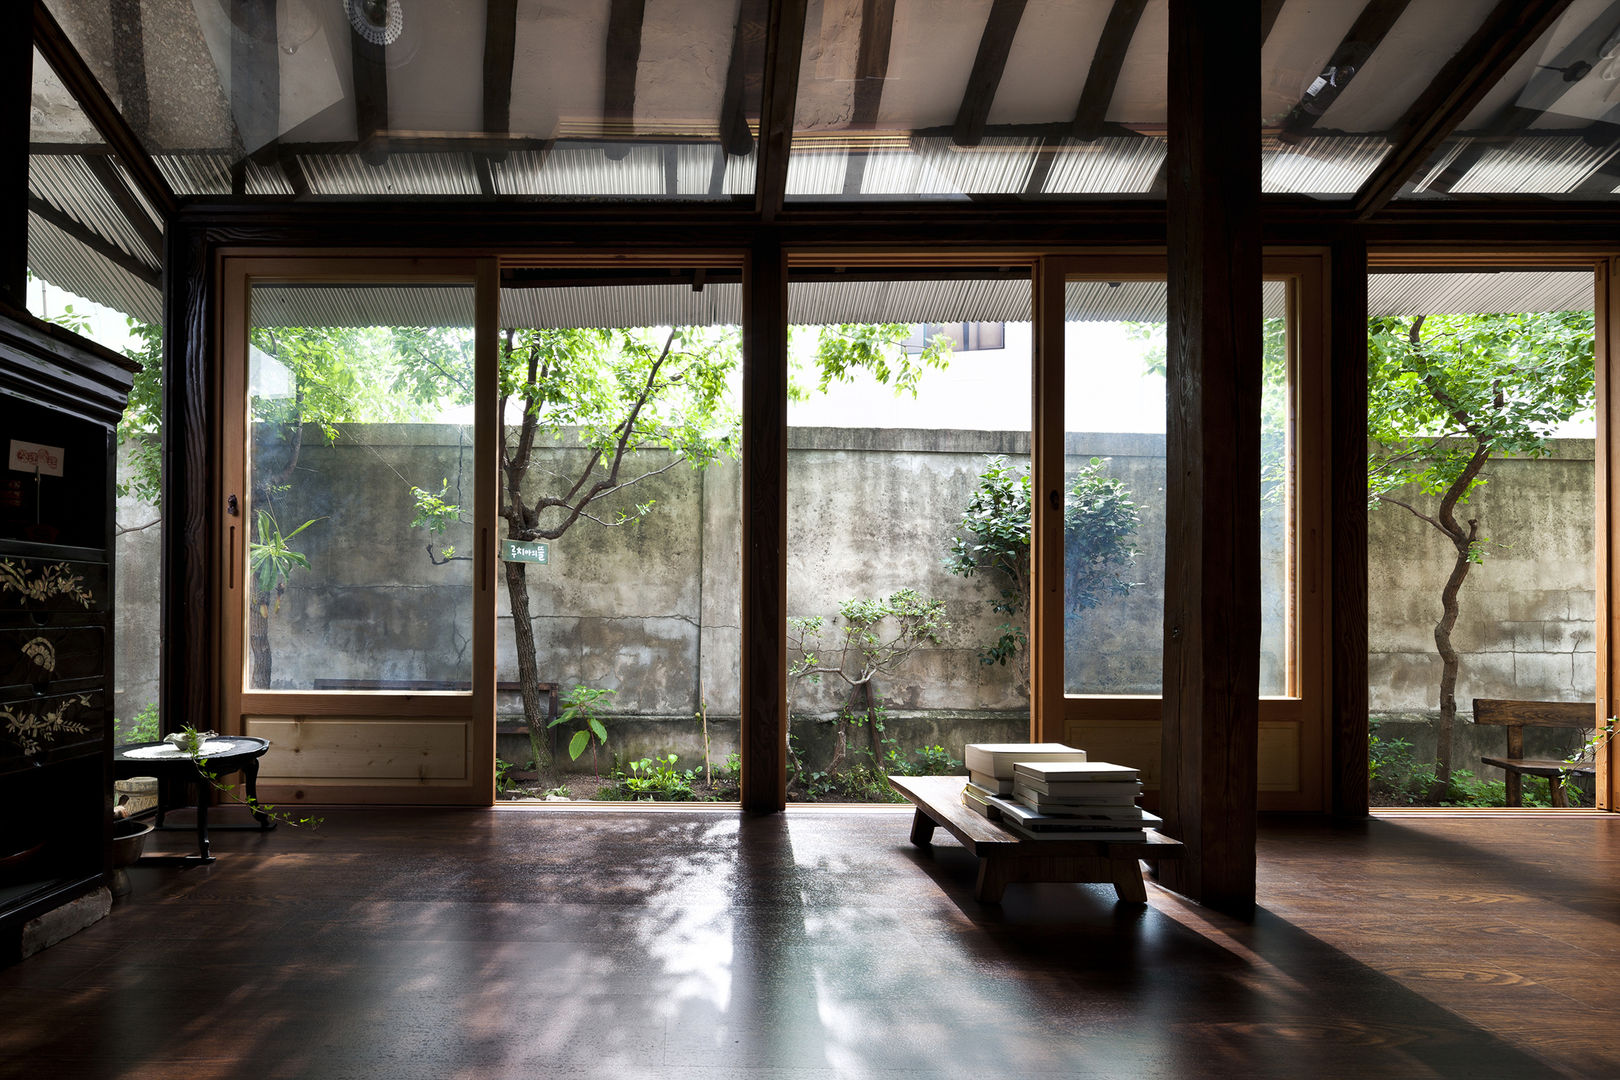 Lucia’s earth, studio_GAON studio_GAON Rumah: Ide desain interior, inspirasi & gambar